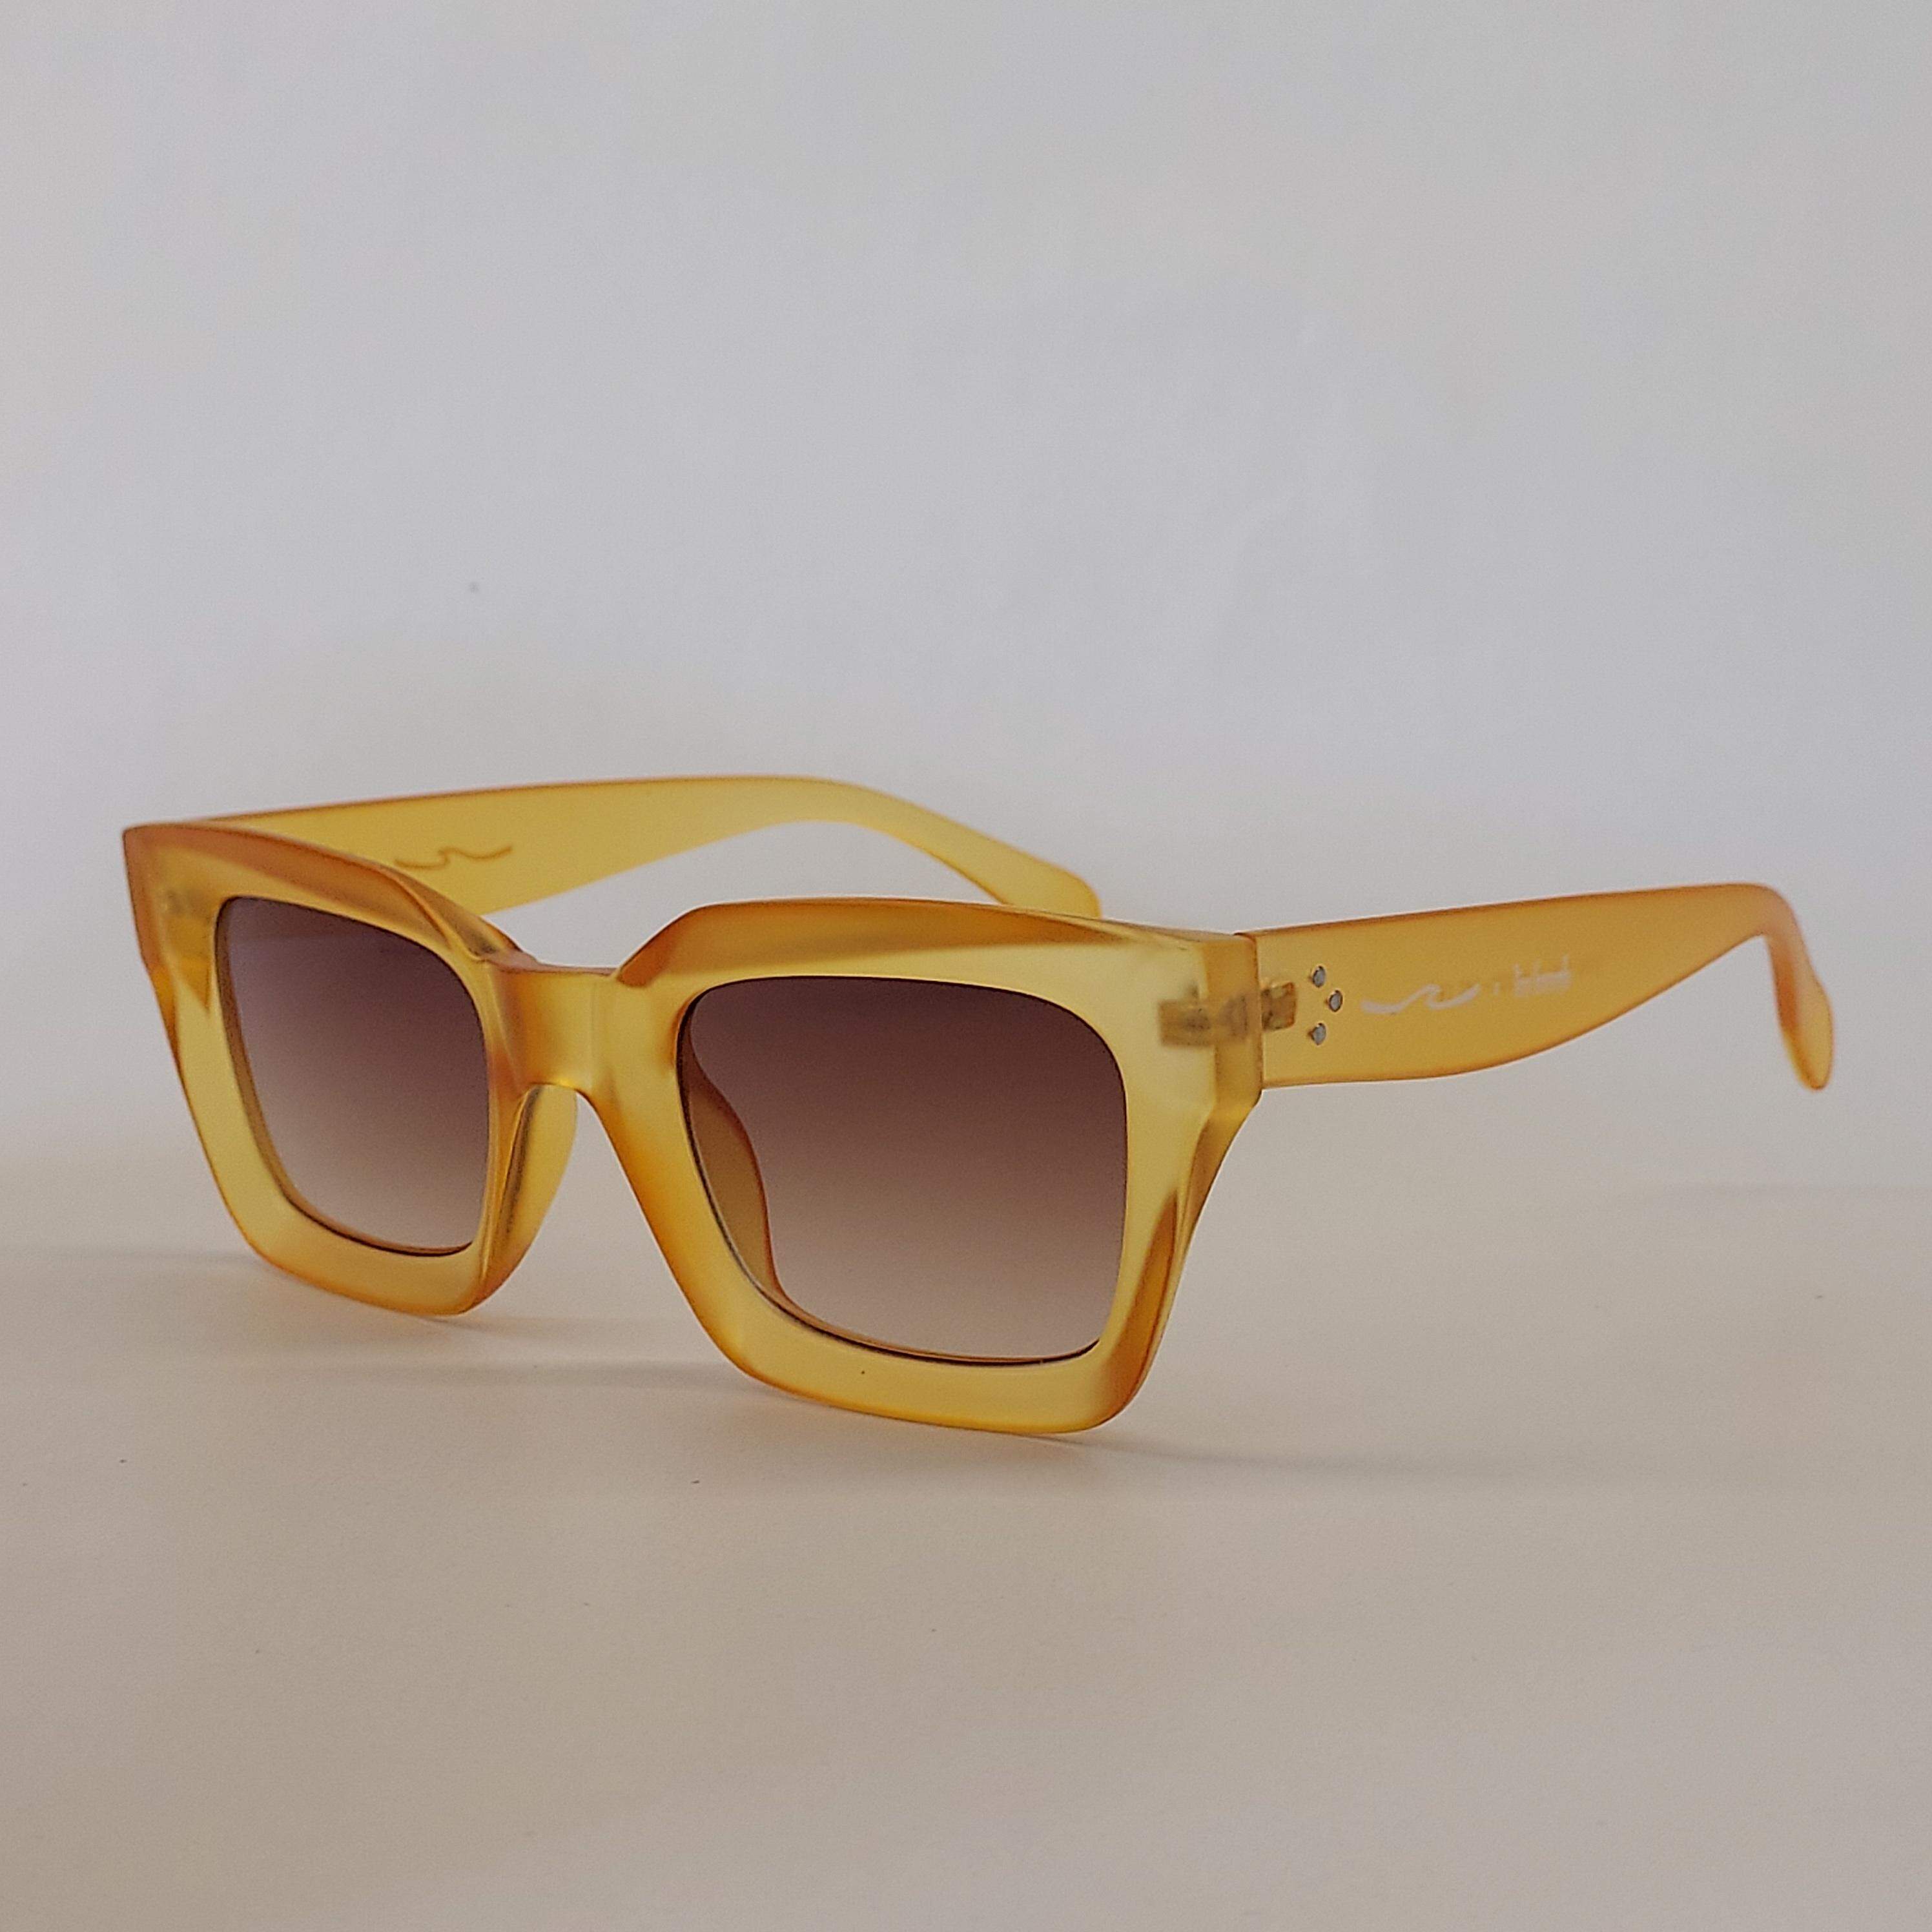 Sunglasses Lin Bomb promo